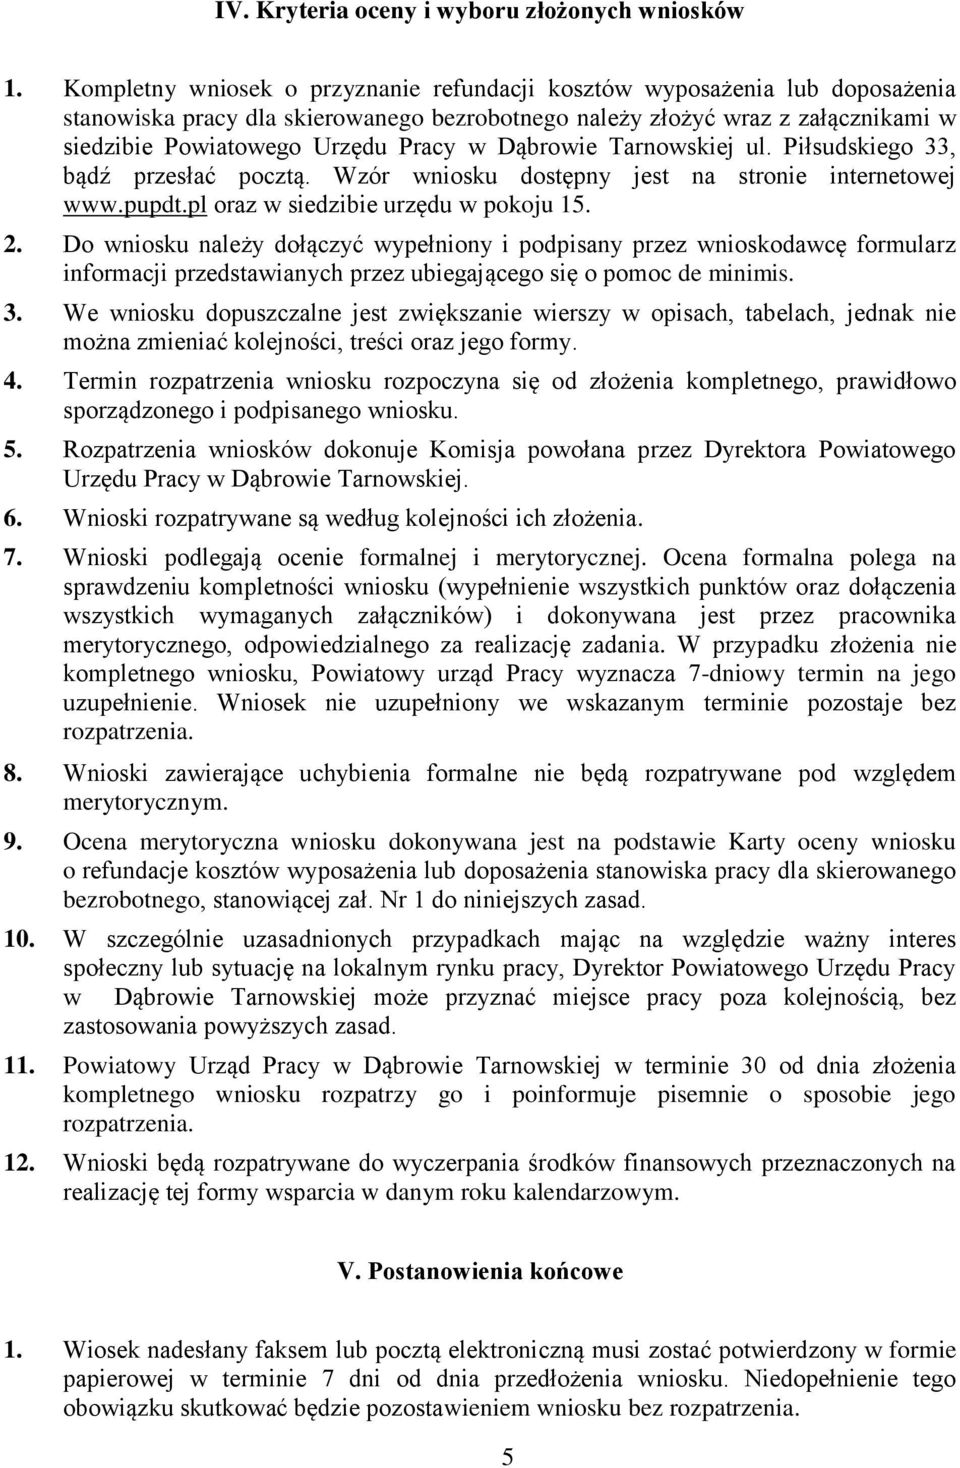 Dąbrowie Tarnowskiej ul. Piłsudskiego 33, bądź przesłać pocztą. Wzór wniosku dostępny jest na stronie internetowej www.pupdt.pl oraz w siedzibie urzędu w pokoju 15. 2.